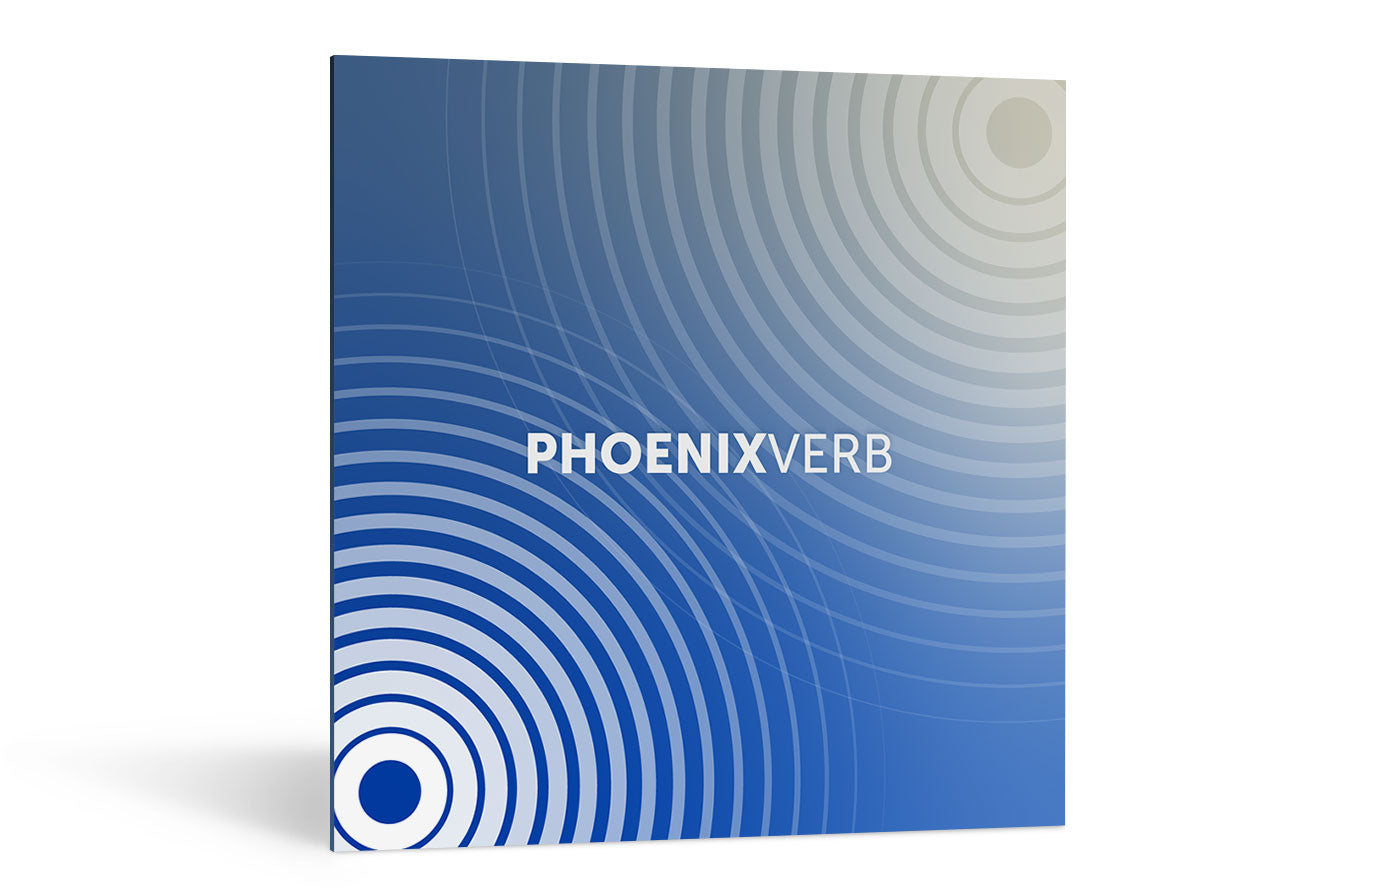 iZotope | Exponential Audio: Phoenix Verb